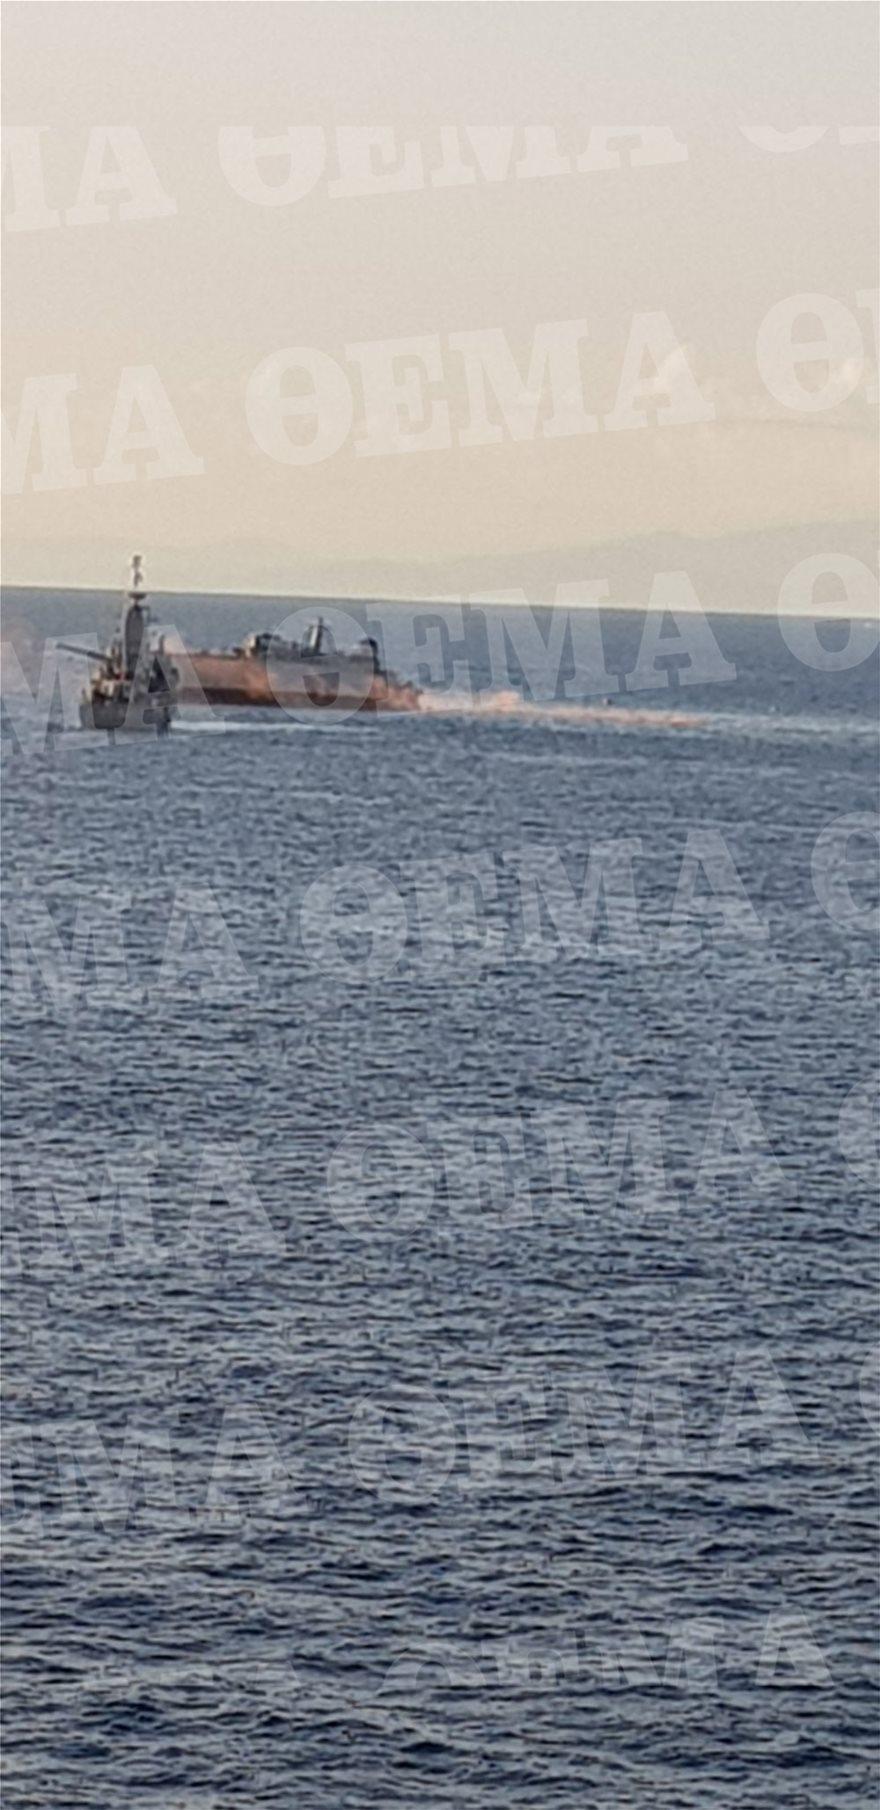 Πειραιάς: Βυθίζεται το ΚΑΛΛΙΣΤΩ μετά από σύγκρουση με εμπορικό πλοίο φωτογραφίες